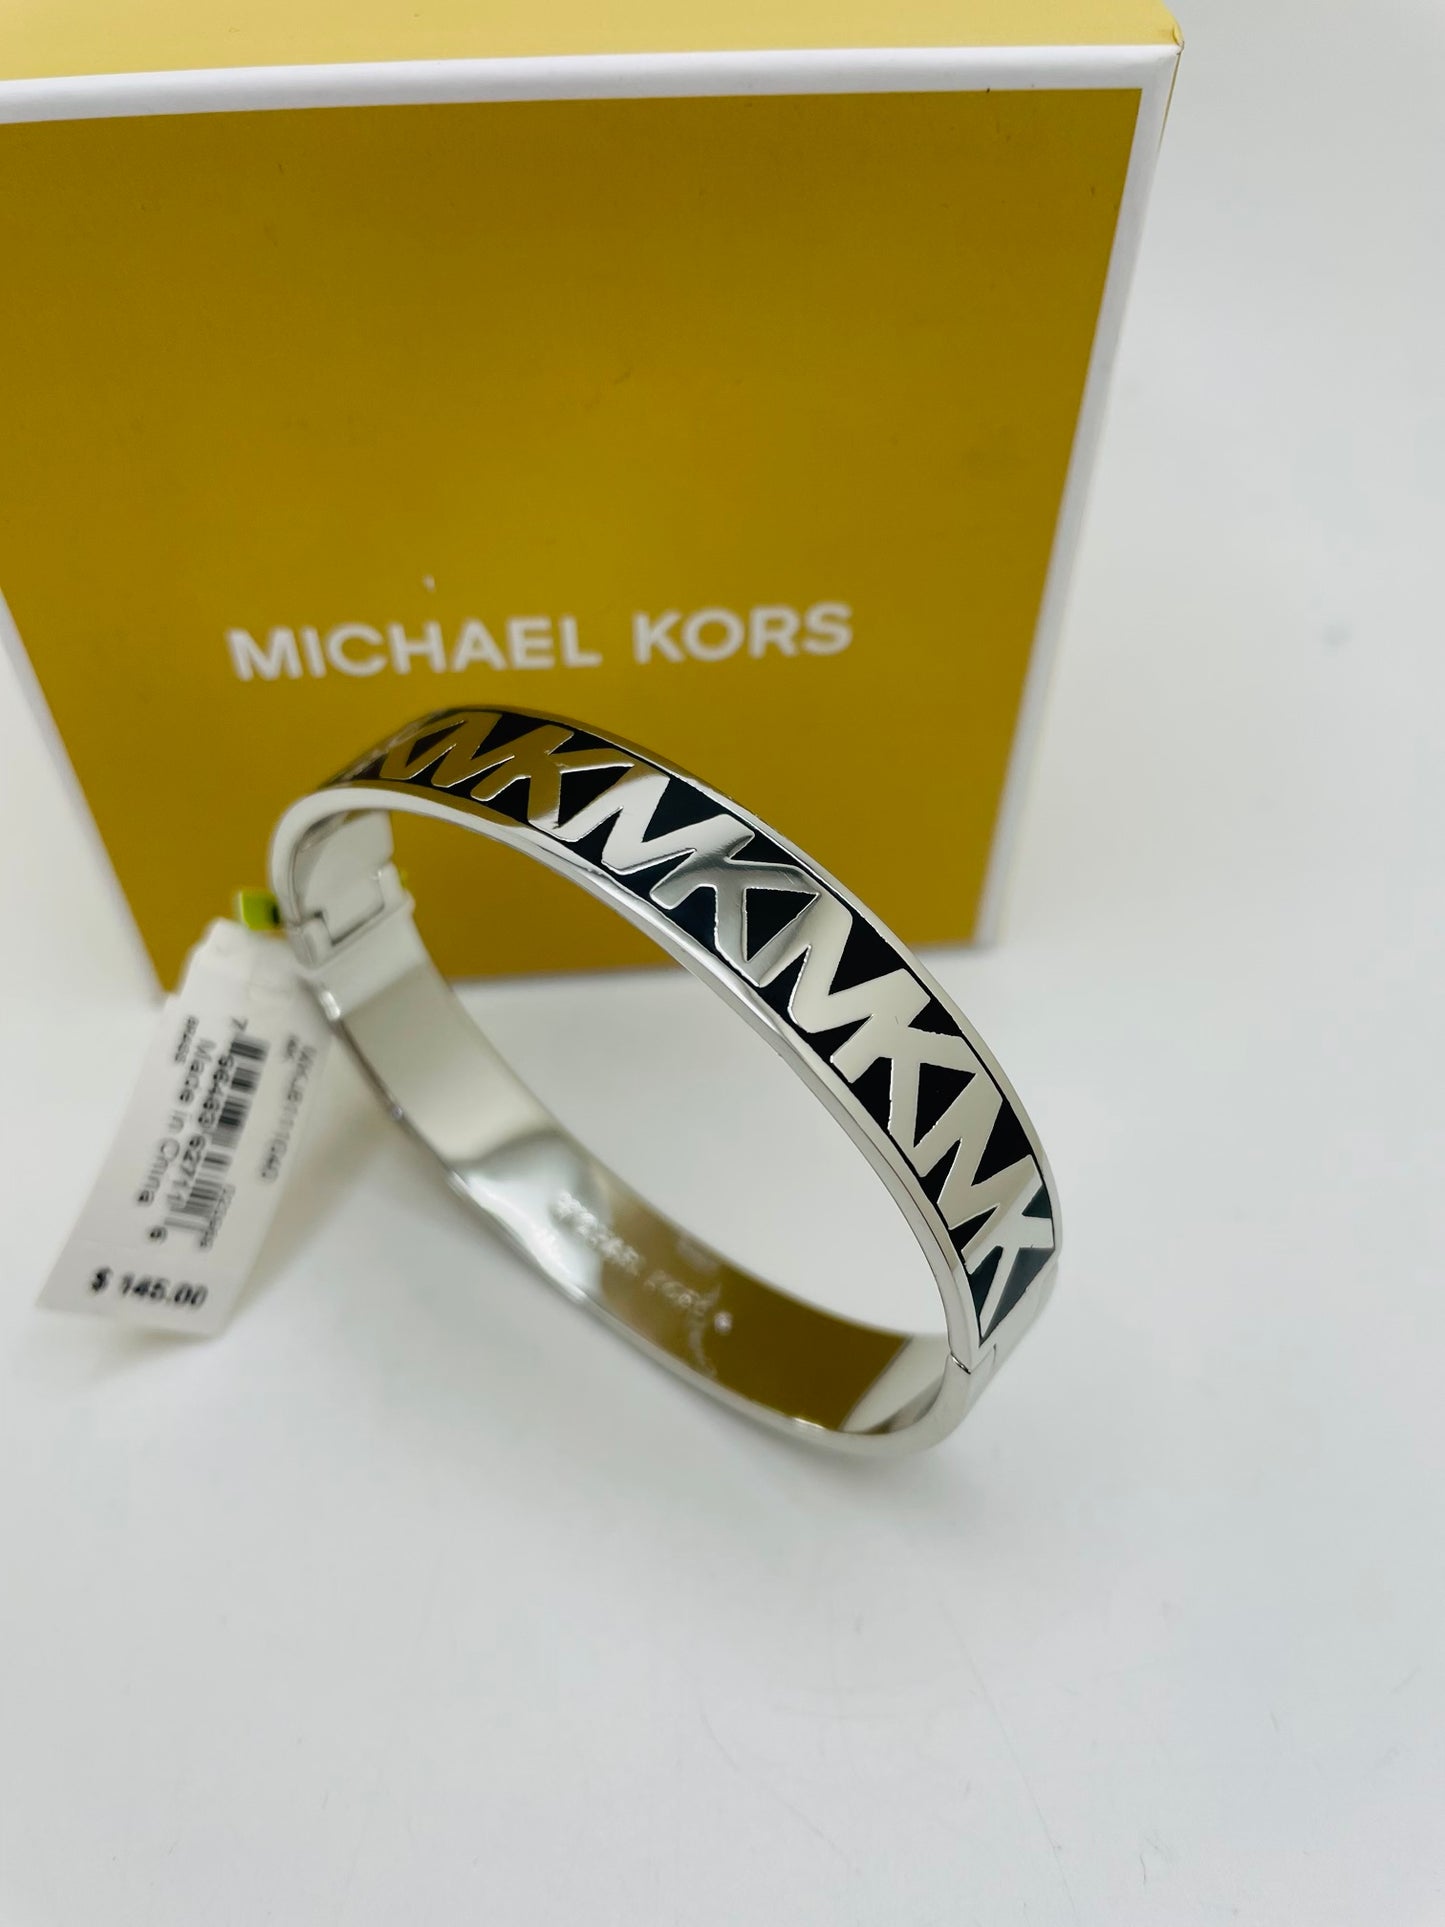 Michael kors bracelet